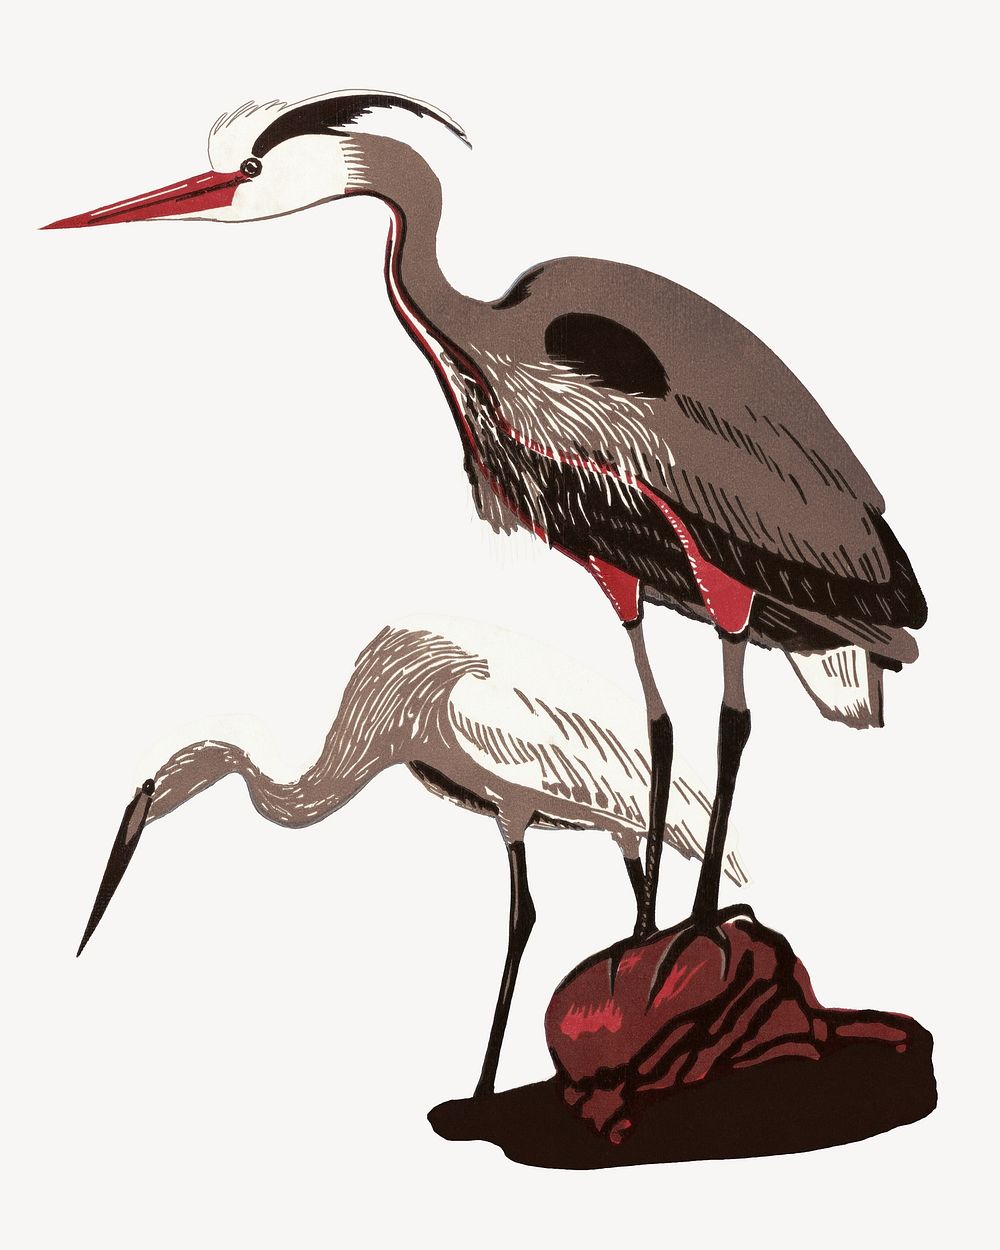 Heron bird, vintage animal illustration.   Remixed by rawpixel.